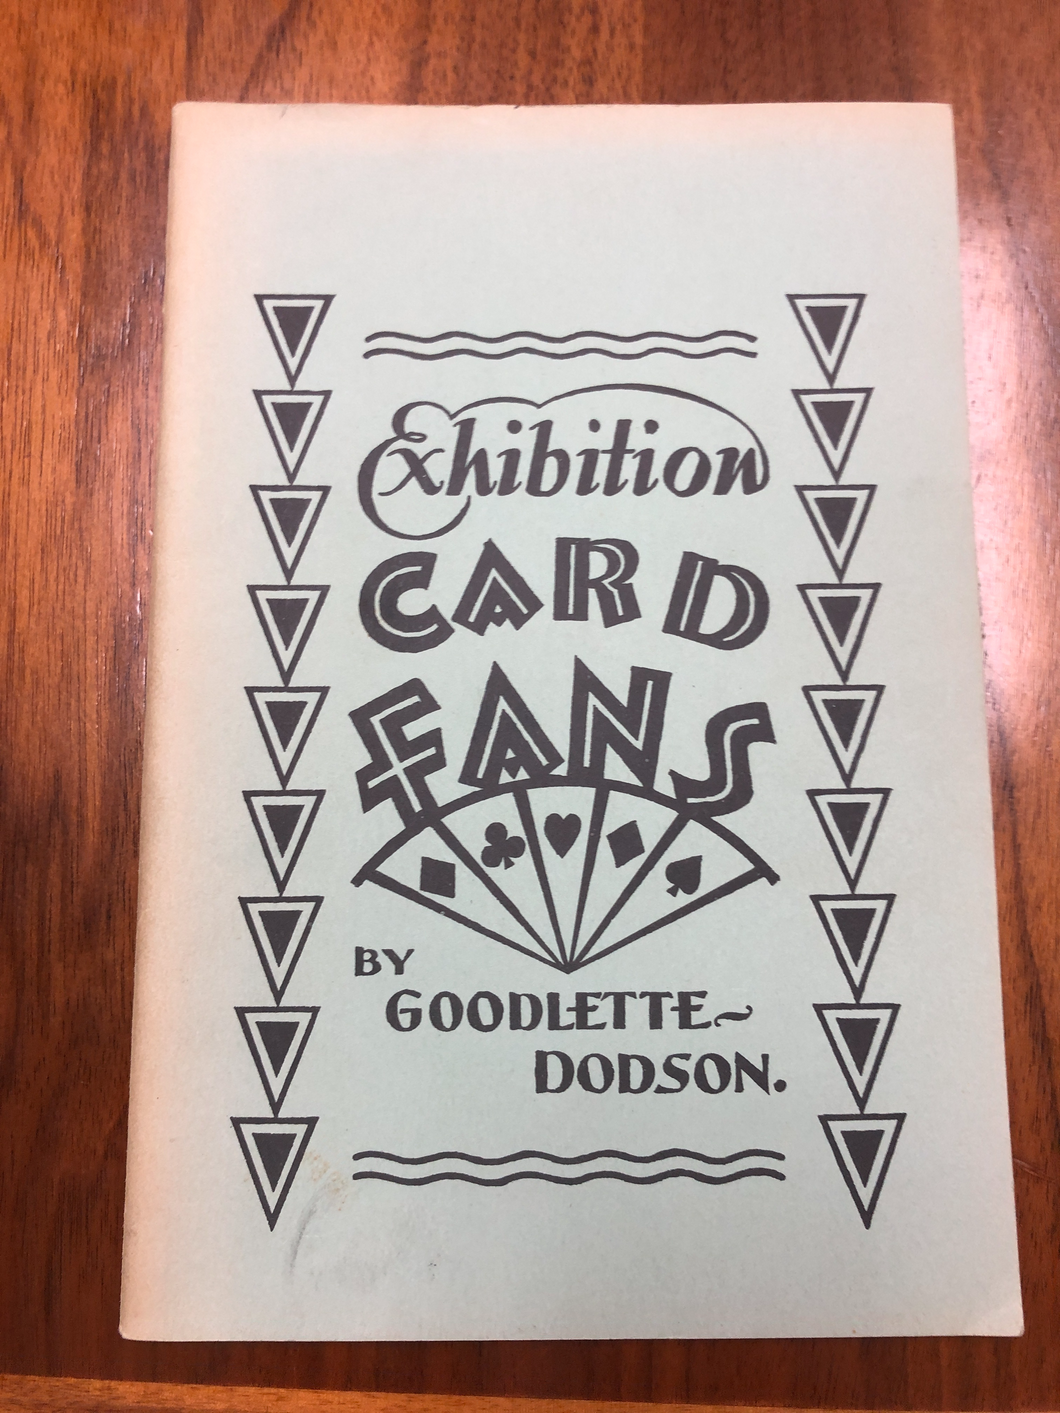 Exhibition Card Fans by Goodlette Dodson